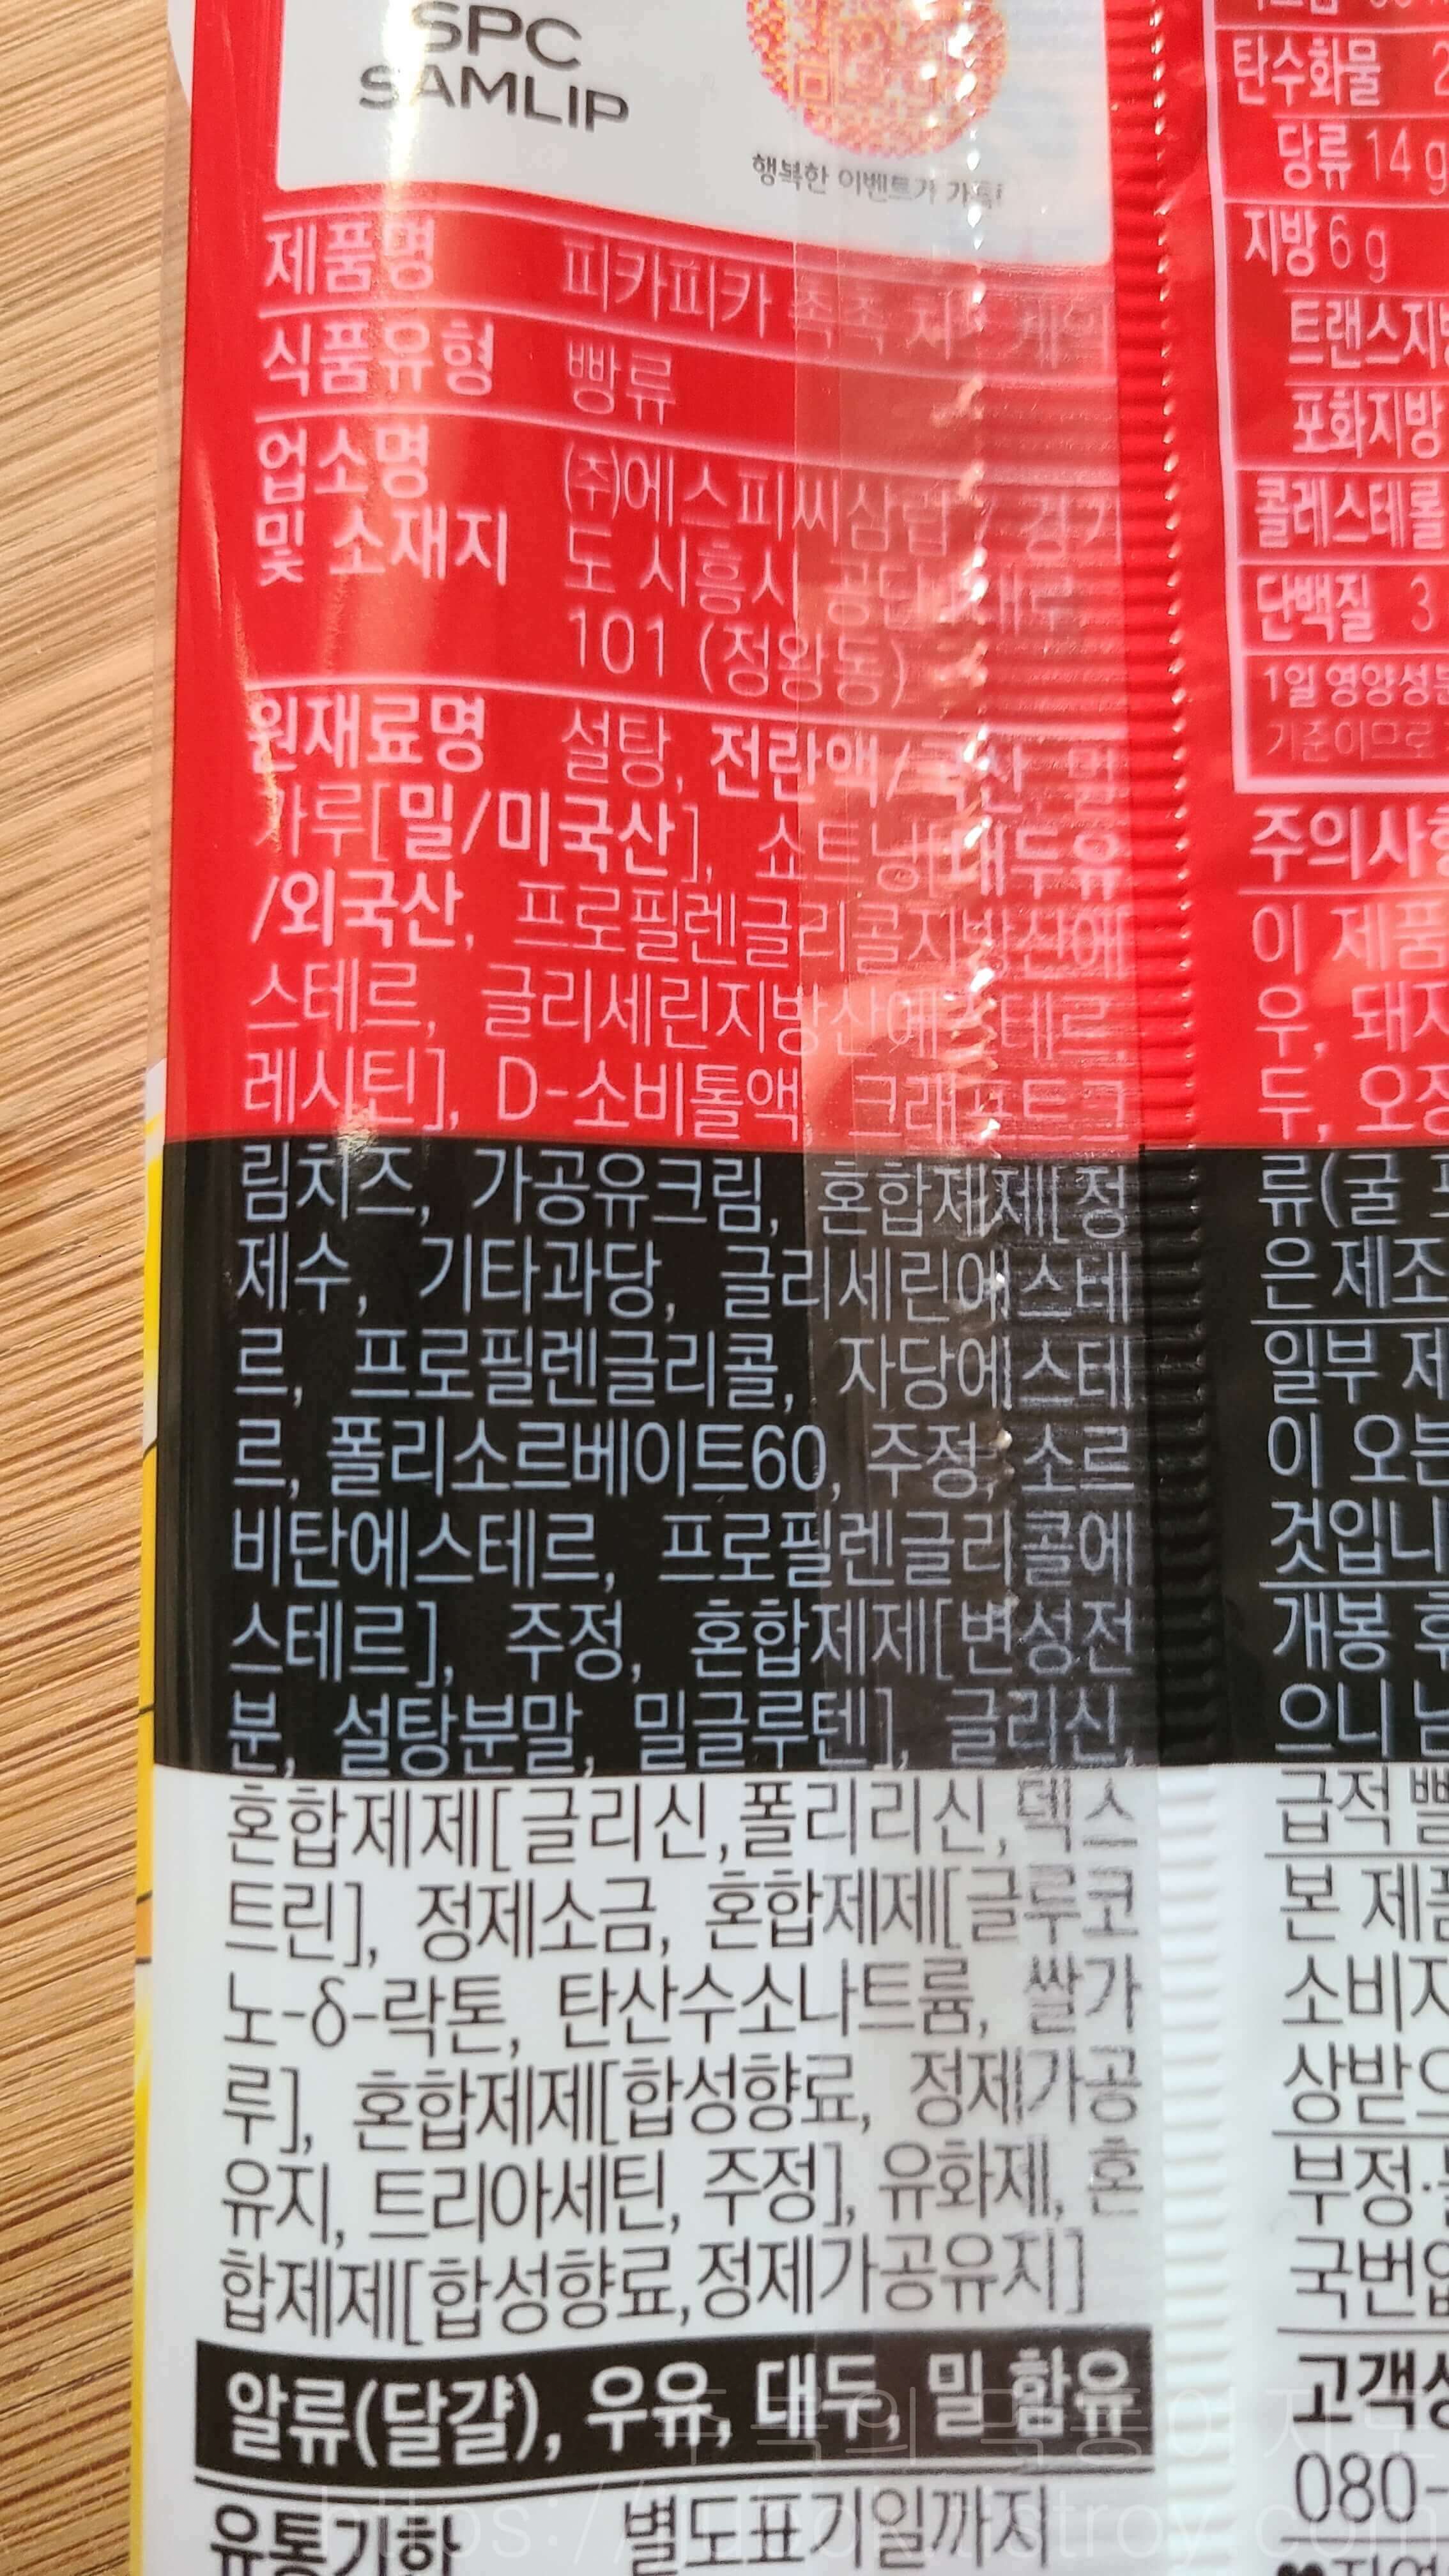 삼립-포켓몬빵-피카피카-촉촉-치즈케익-원재료명